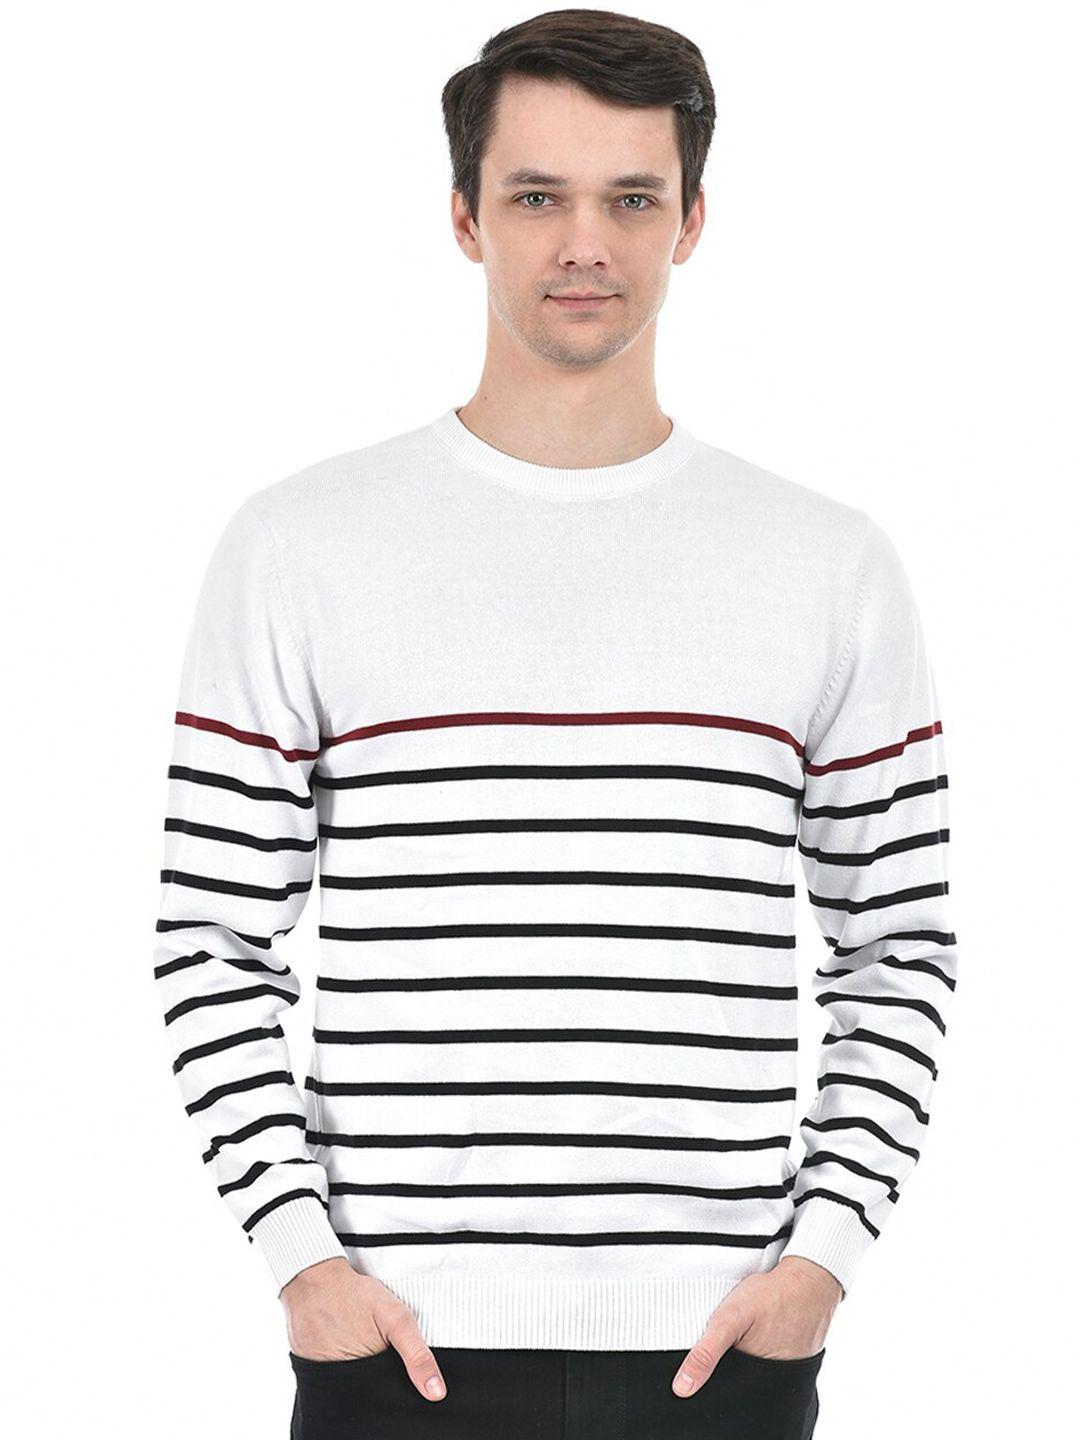 integriti-men-striped-pullover